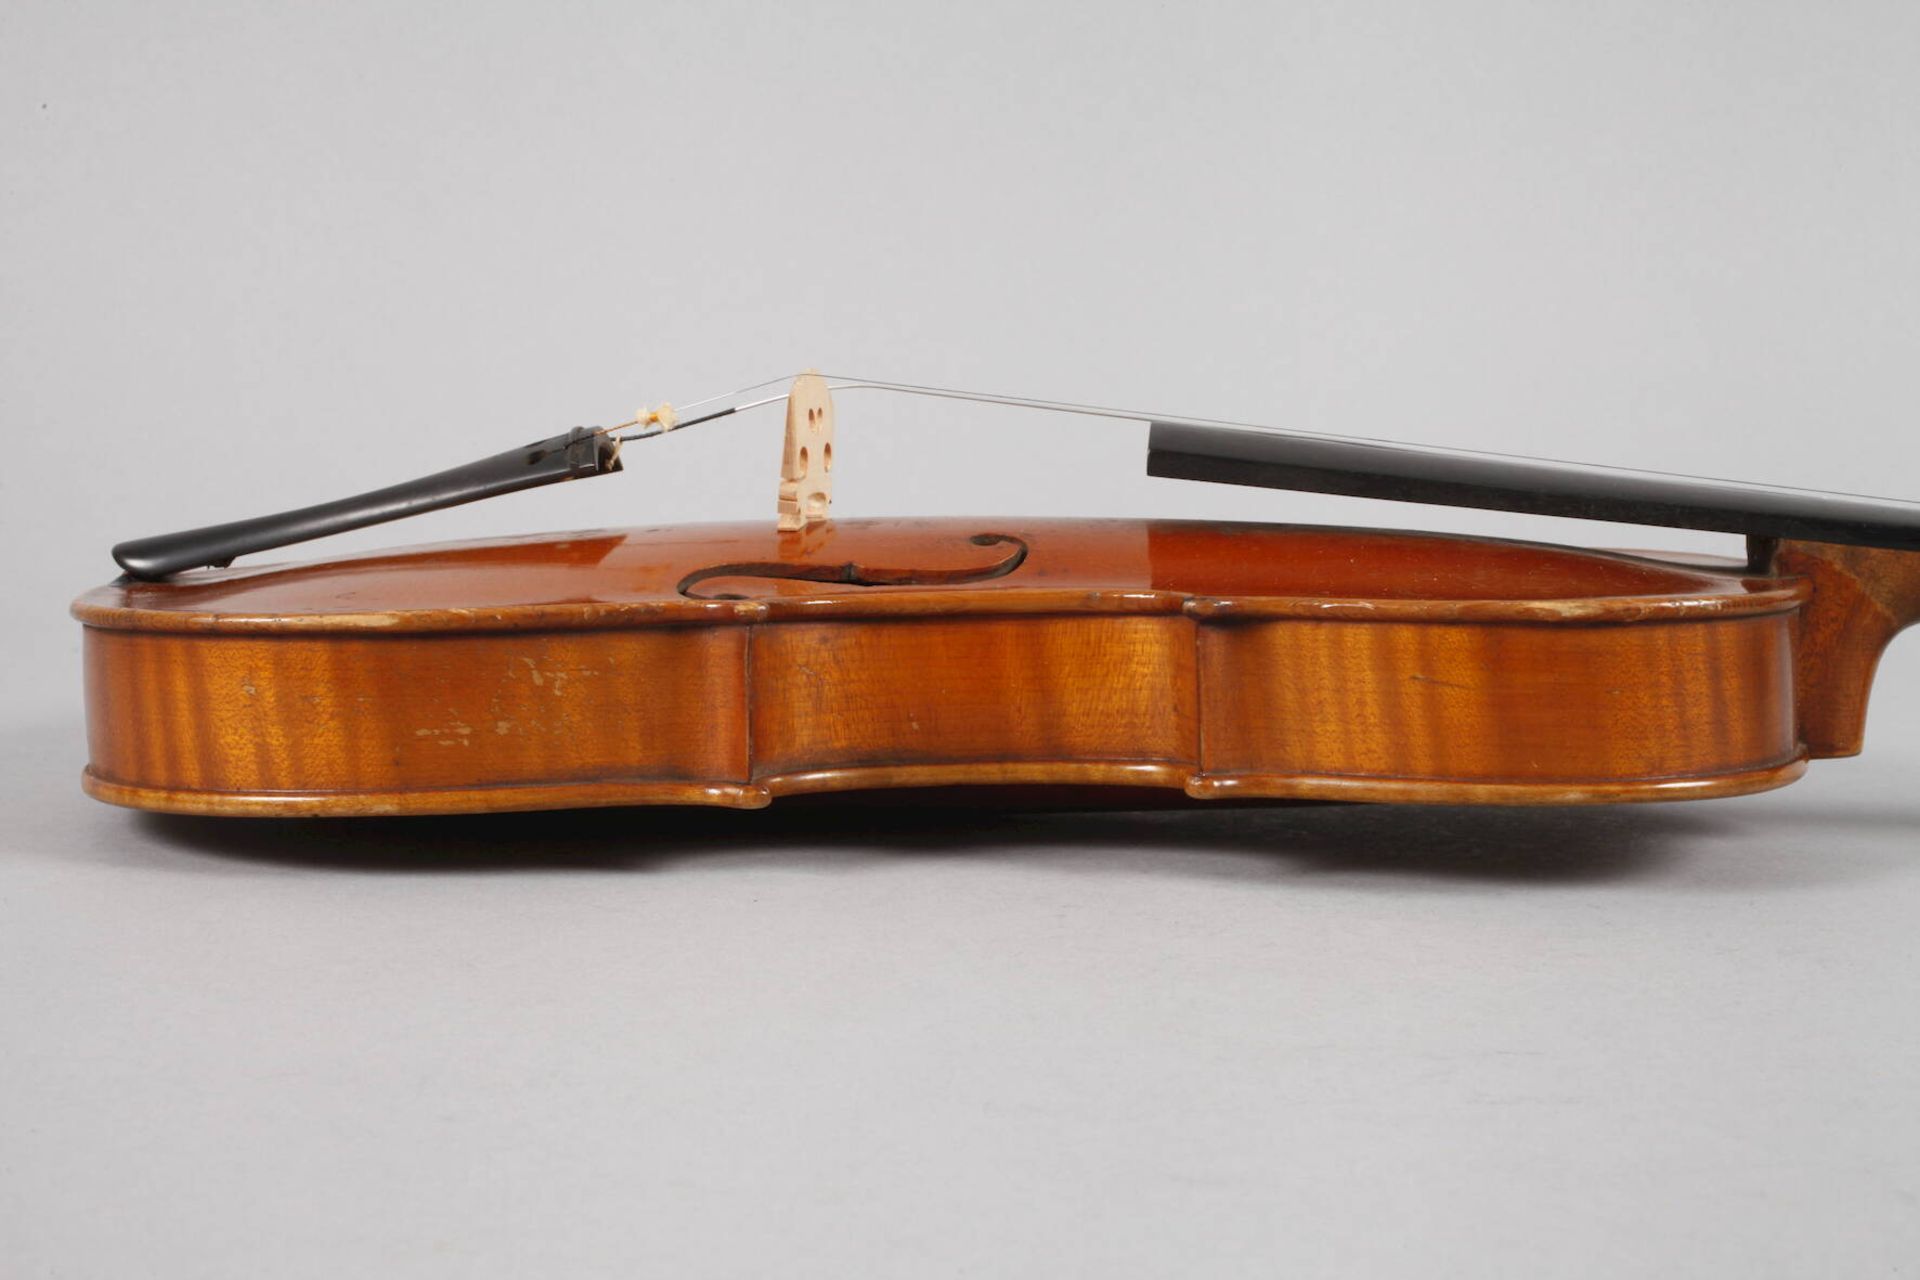 ViolineAnfang 20. Jh., innen auf Klebezettel in Französisch bezeichnet ... Lot Turin, geteilter, - Bild 5 aus 7